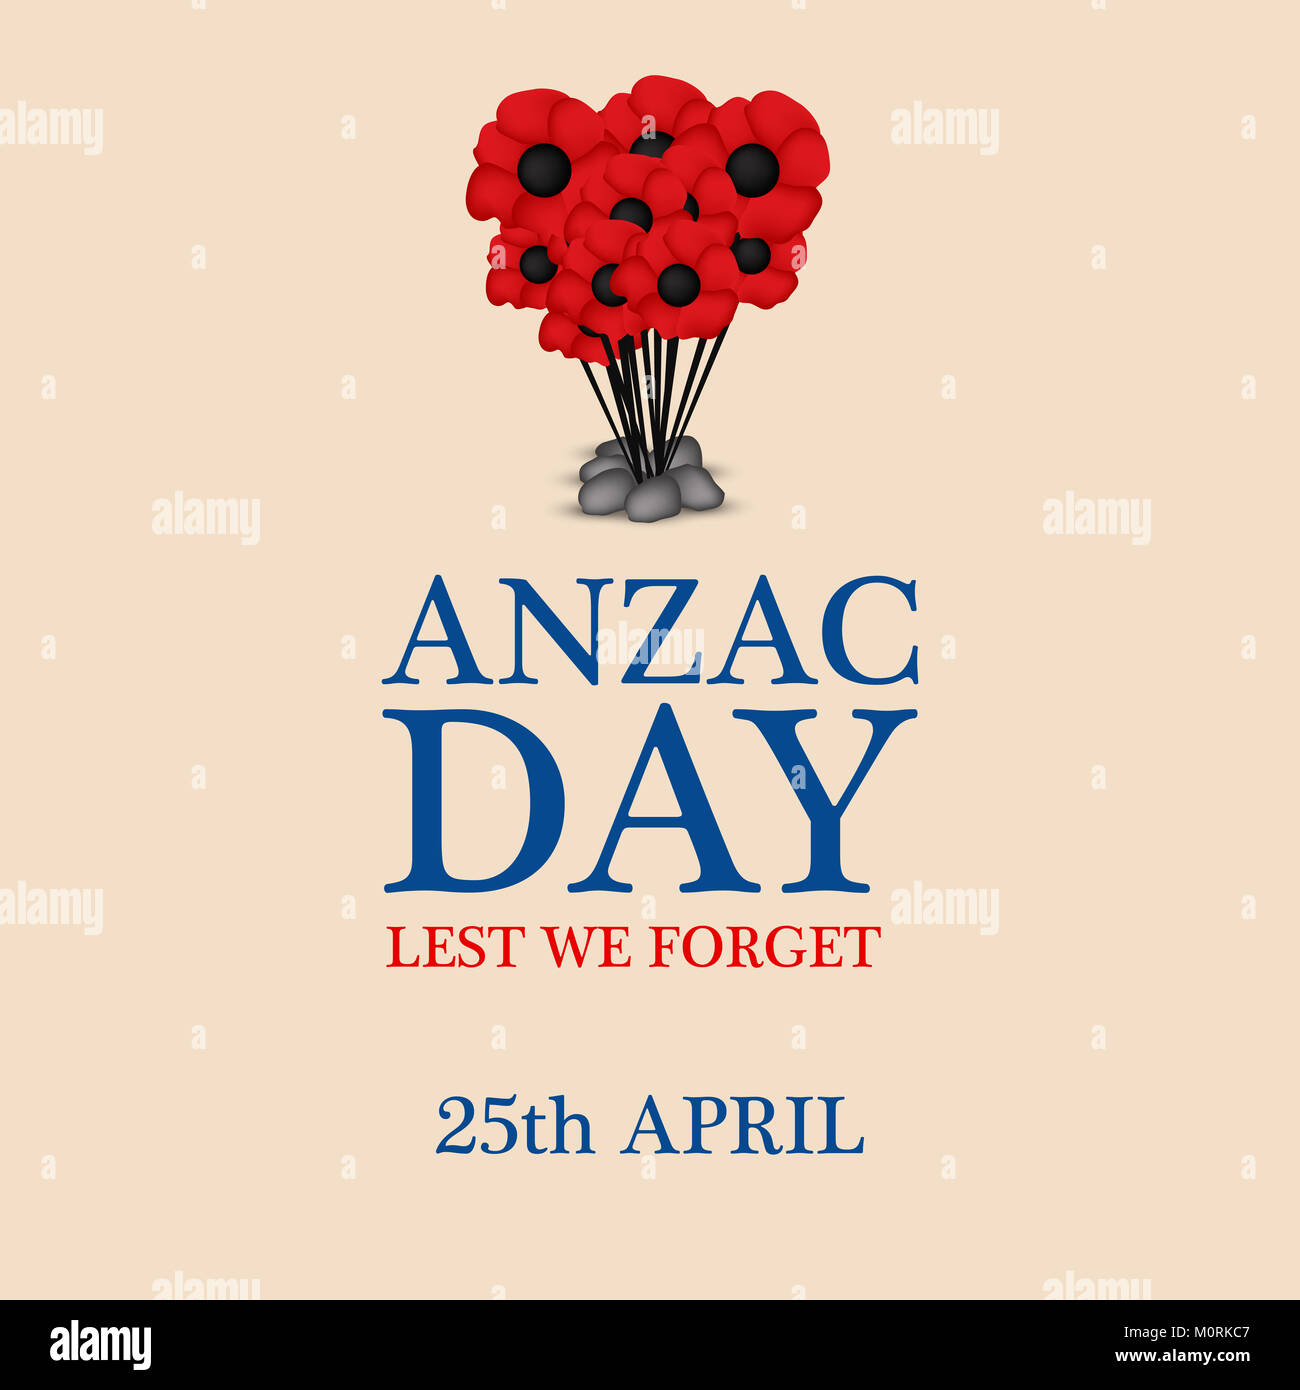 Ilustración del fondo del día de Anzac. El día de Anzac es un día nacional de recuerdo en Australia y Nueva Zelanda Foto de stock